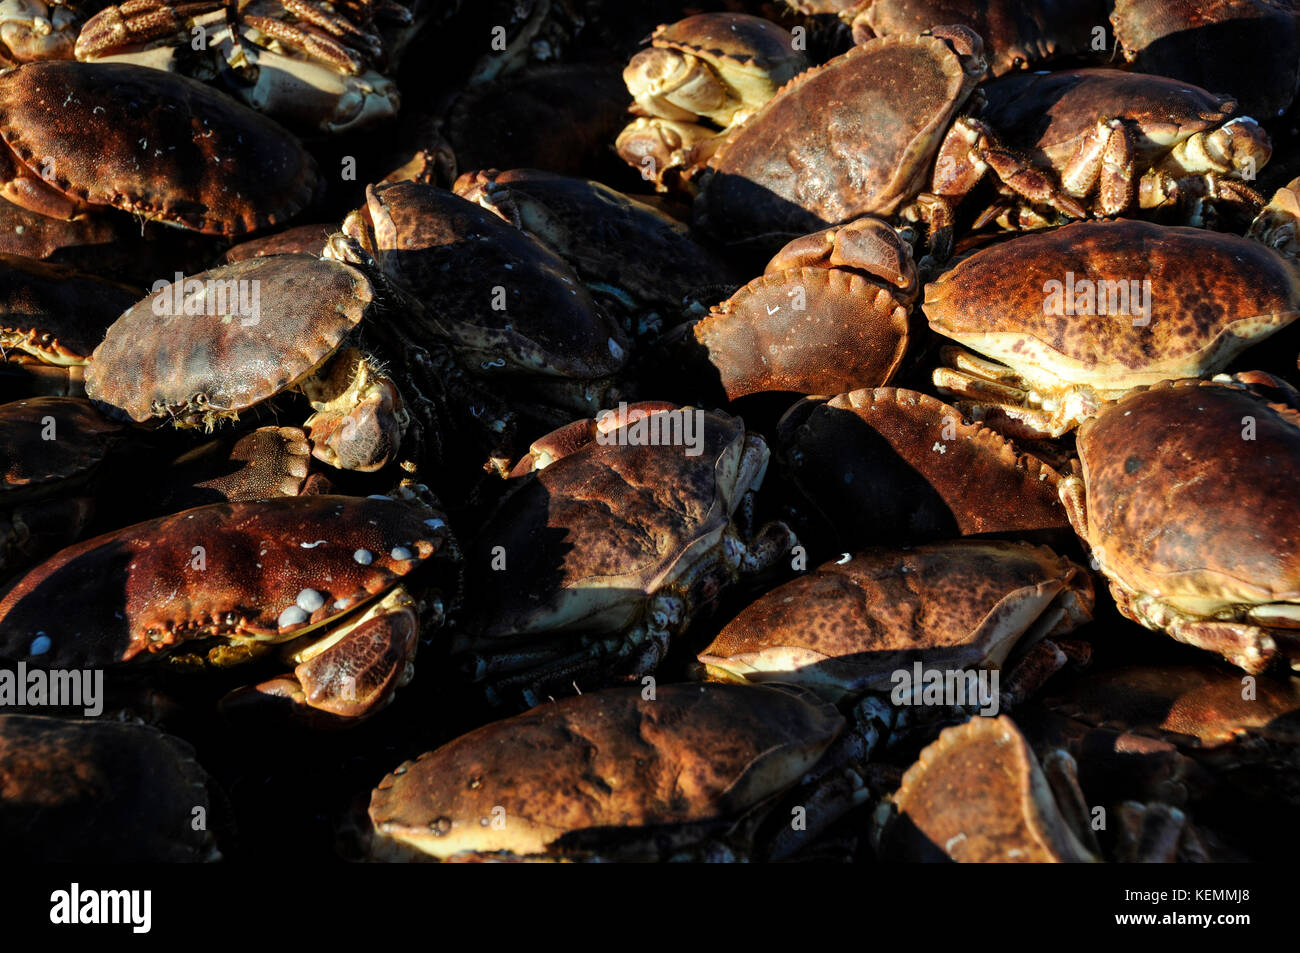 Un chalutier français amarré dans le port d'Ullapool à Loch Broom.C'est la cargaison de crabes pêchés de la mer du nord.Wester Ross, Écosse. Banque D'Images